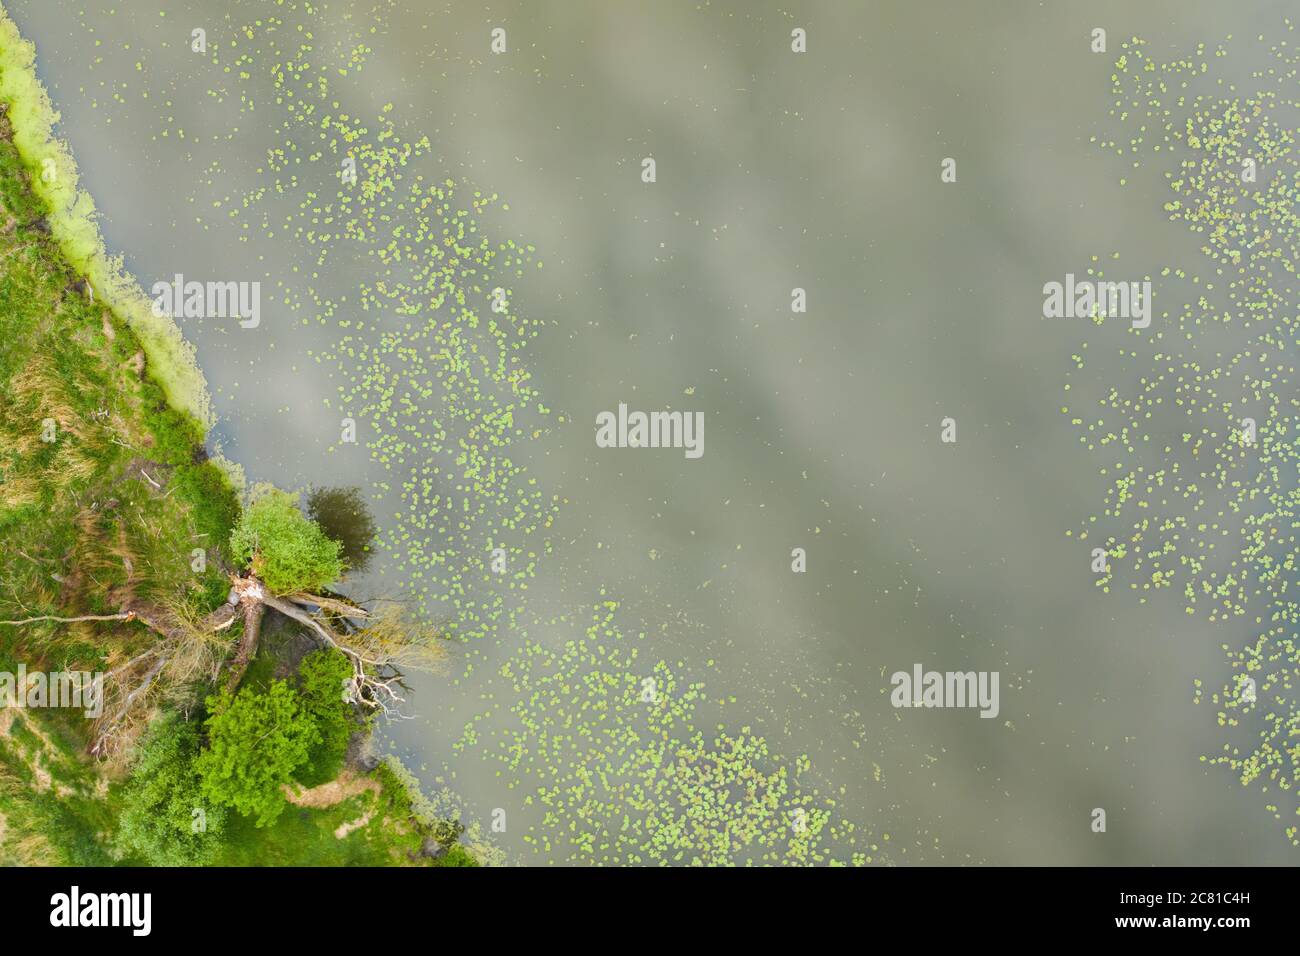 Luftaufnahme eines Seeufers mit grünen Seerosblättern, die auf dem Wasser schweben. Stockfoto